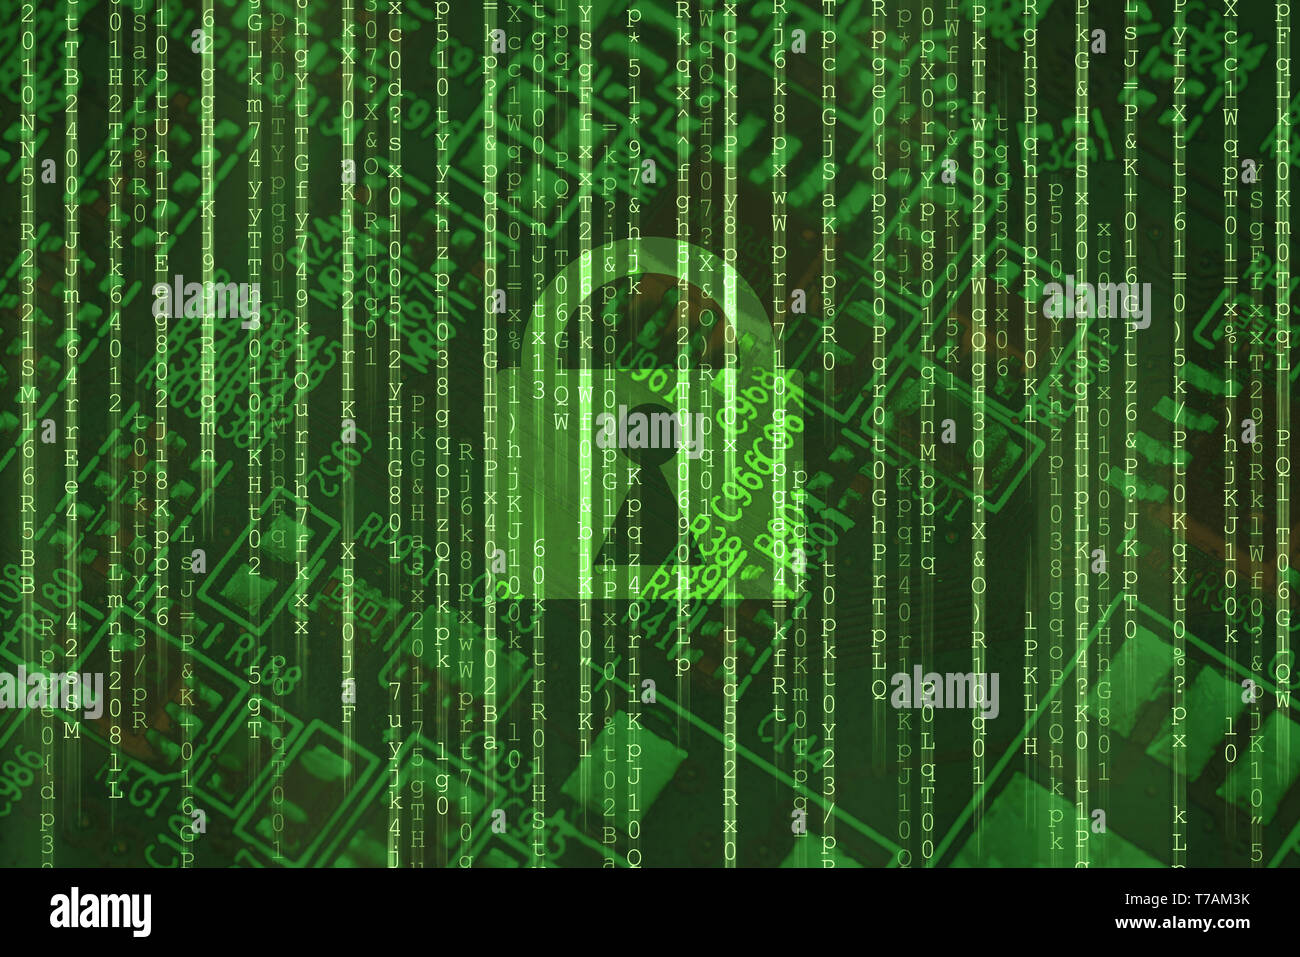 Blocage d'accès de sécurité cybernétique matrice binaire sur fond vert de la protection des données en ligne Internet Banque D'Images